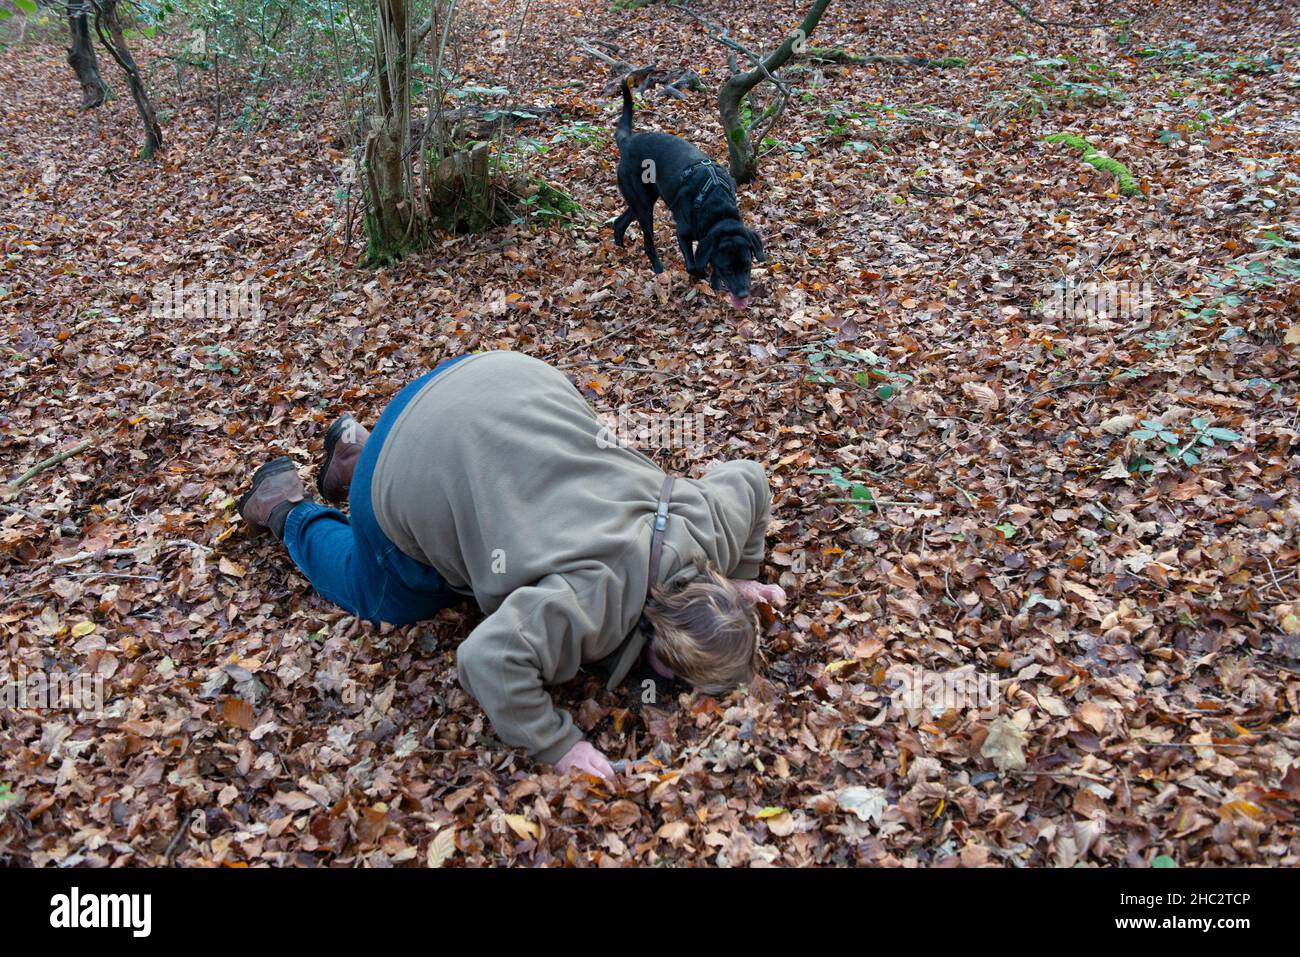 Ein Trüffeljäger und ein Hund jagen nach den Köstlichkeiten in den Chilterner Wäldern von Buckinghamshire Stockfoto